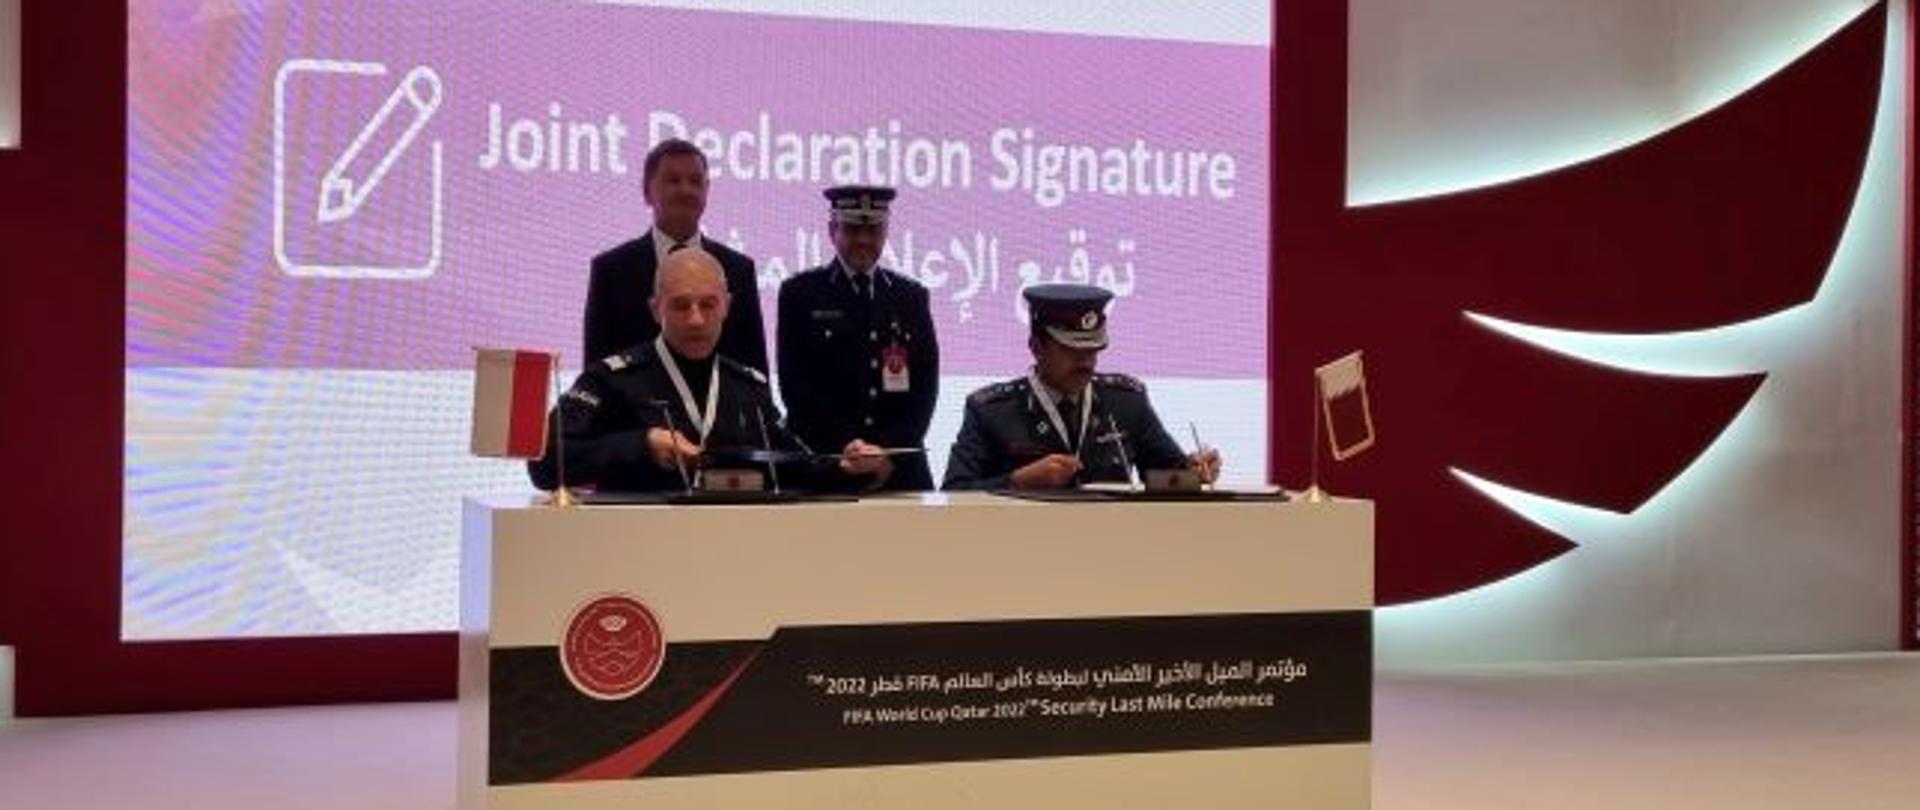 Podpisanie wspólnej deklaracja w sprawie wymiany informacji między Państwem Katar a krajami uczestniczącymi w FIFA Qatar 2022™